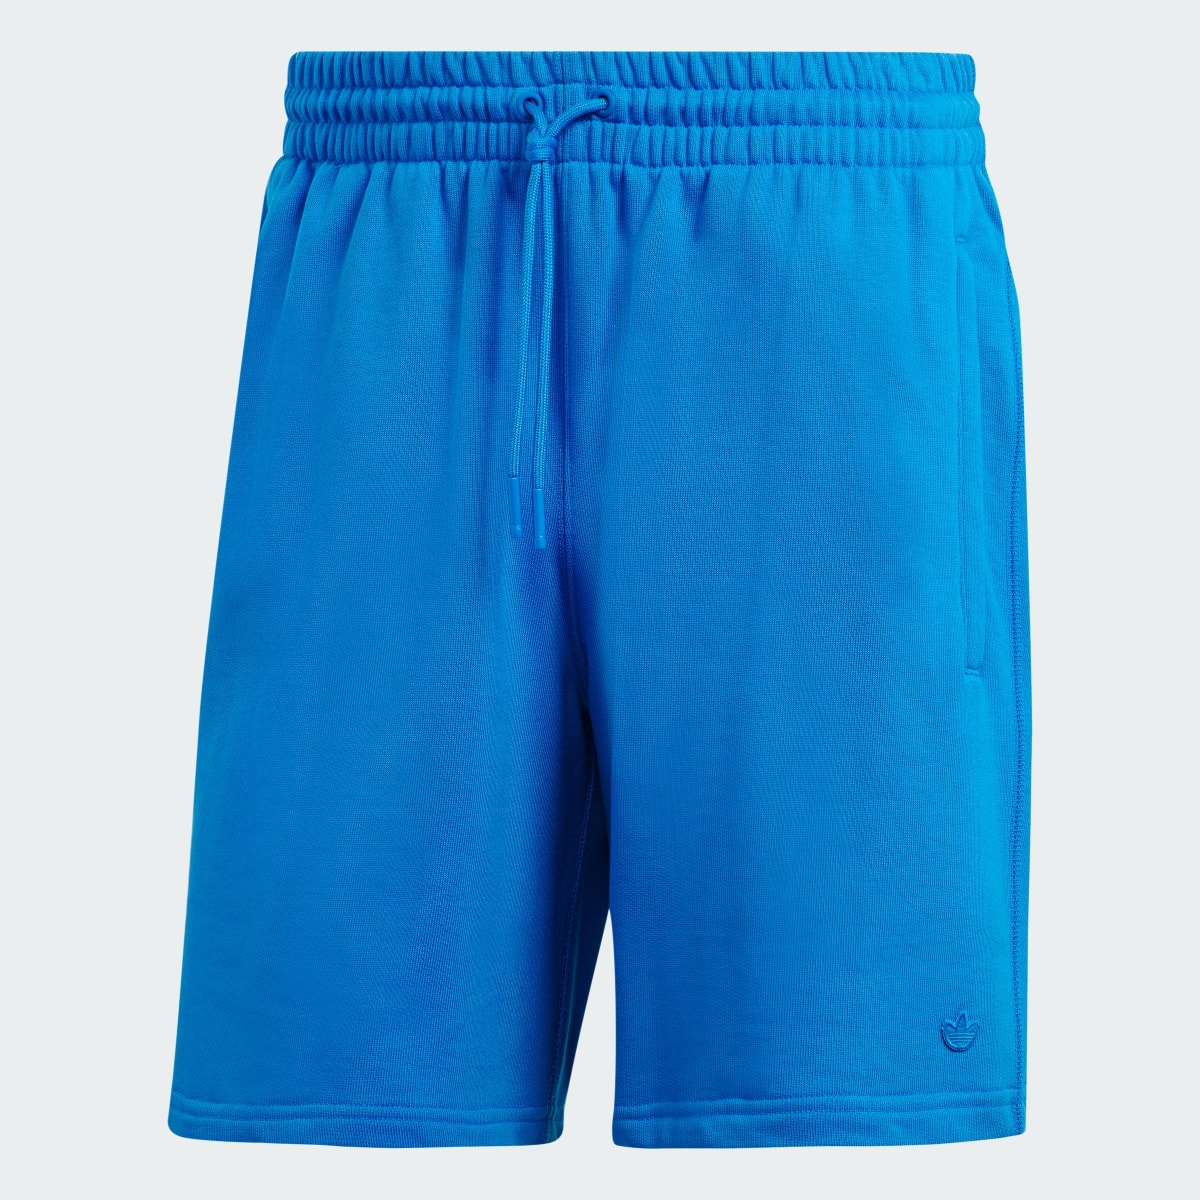 Adidas Premium Essentials Shorts. 4